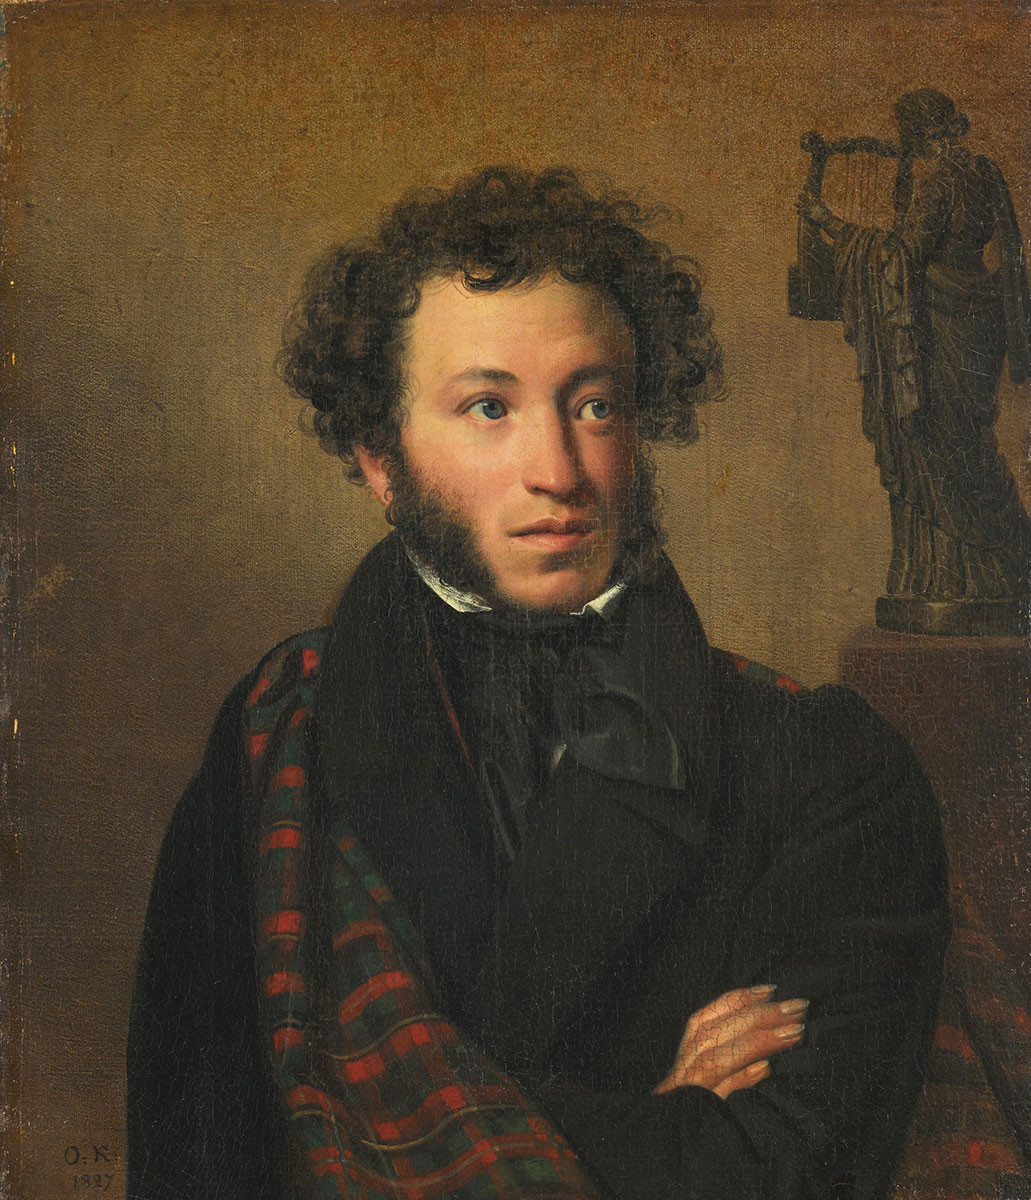 Portret Aleksandra Puškina, Orest Kiprenski, 1827.